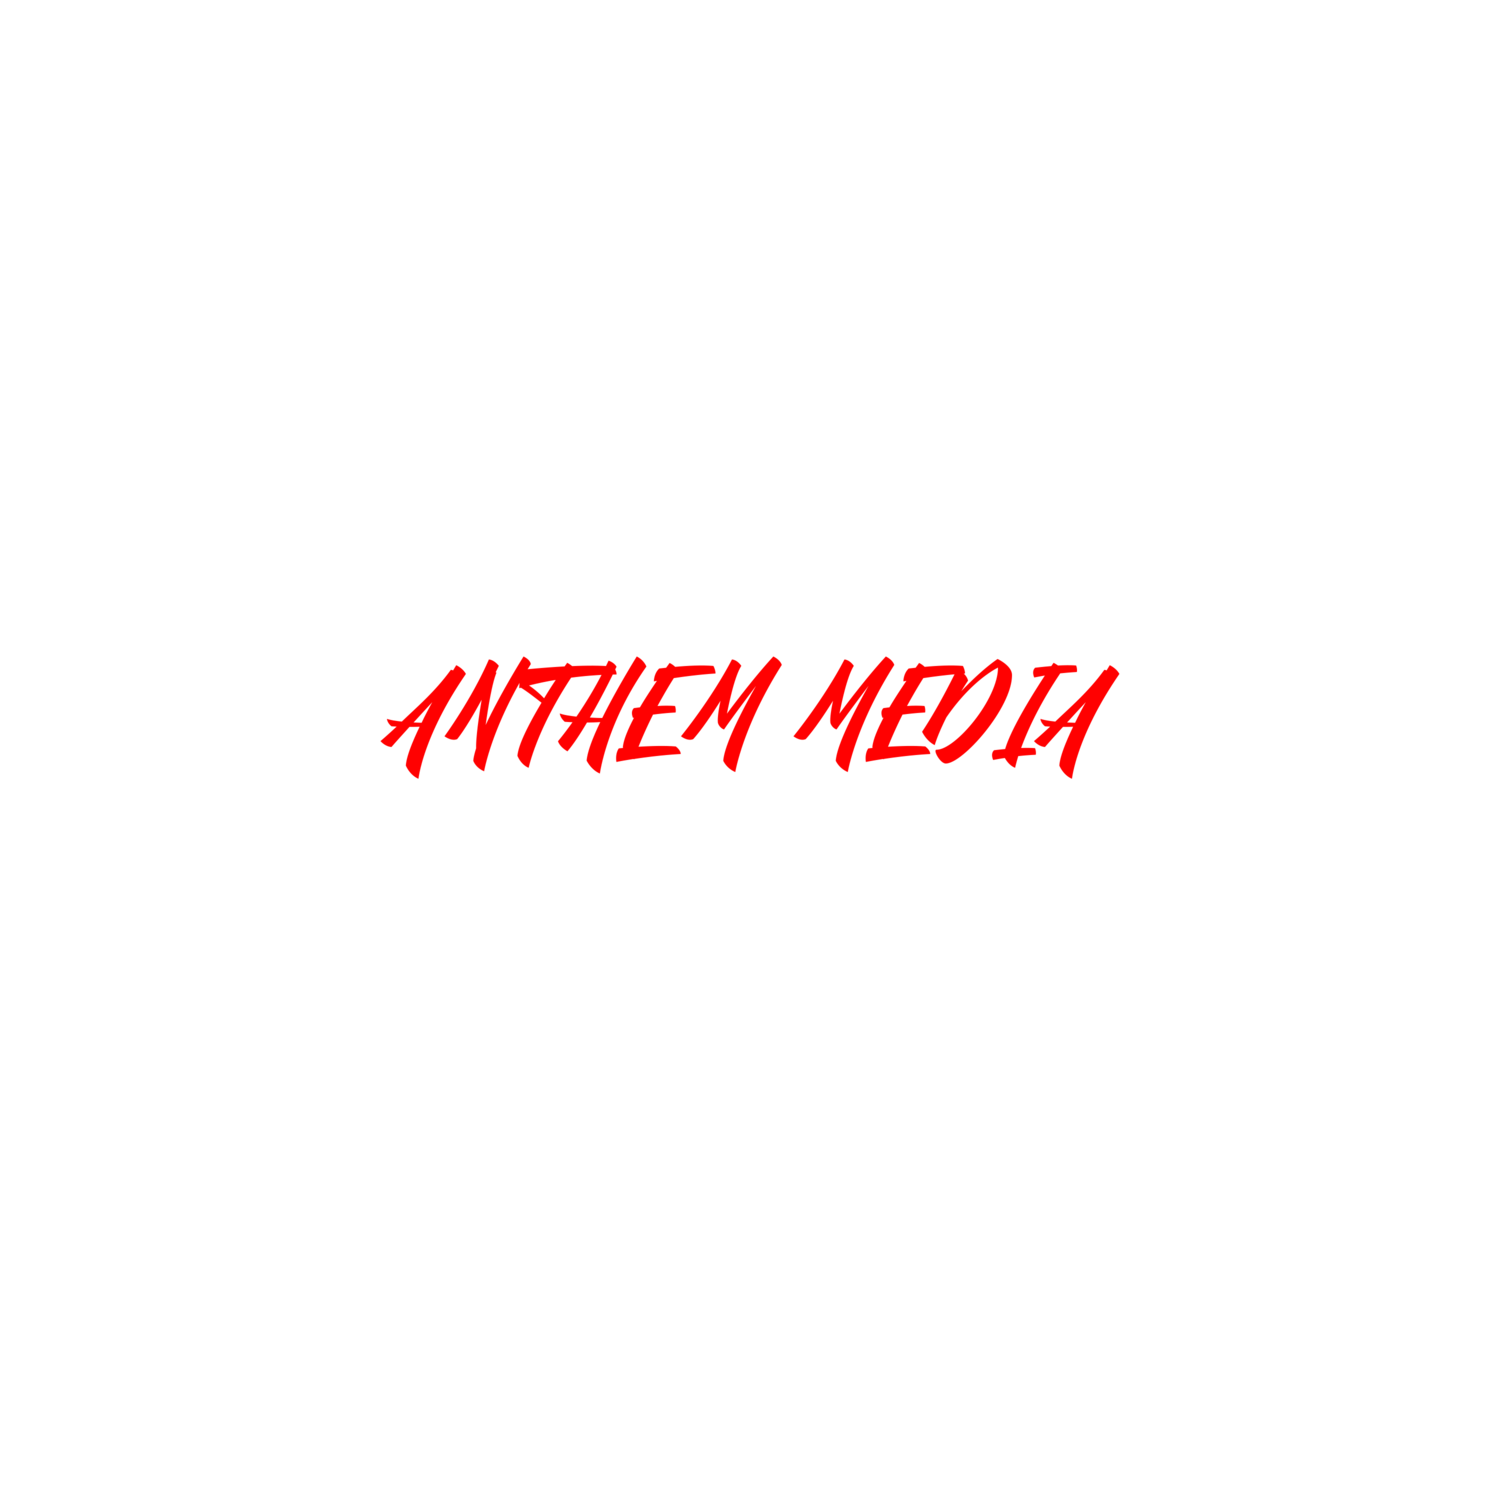 Anthem Media 864